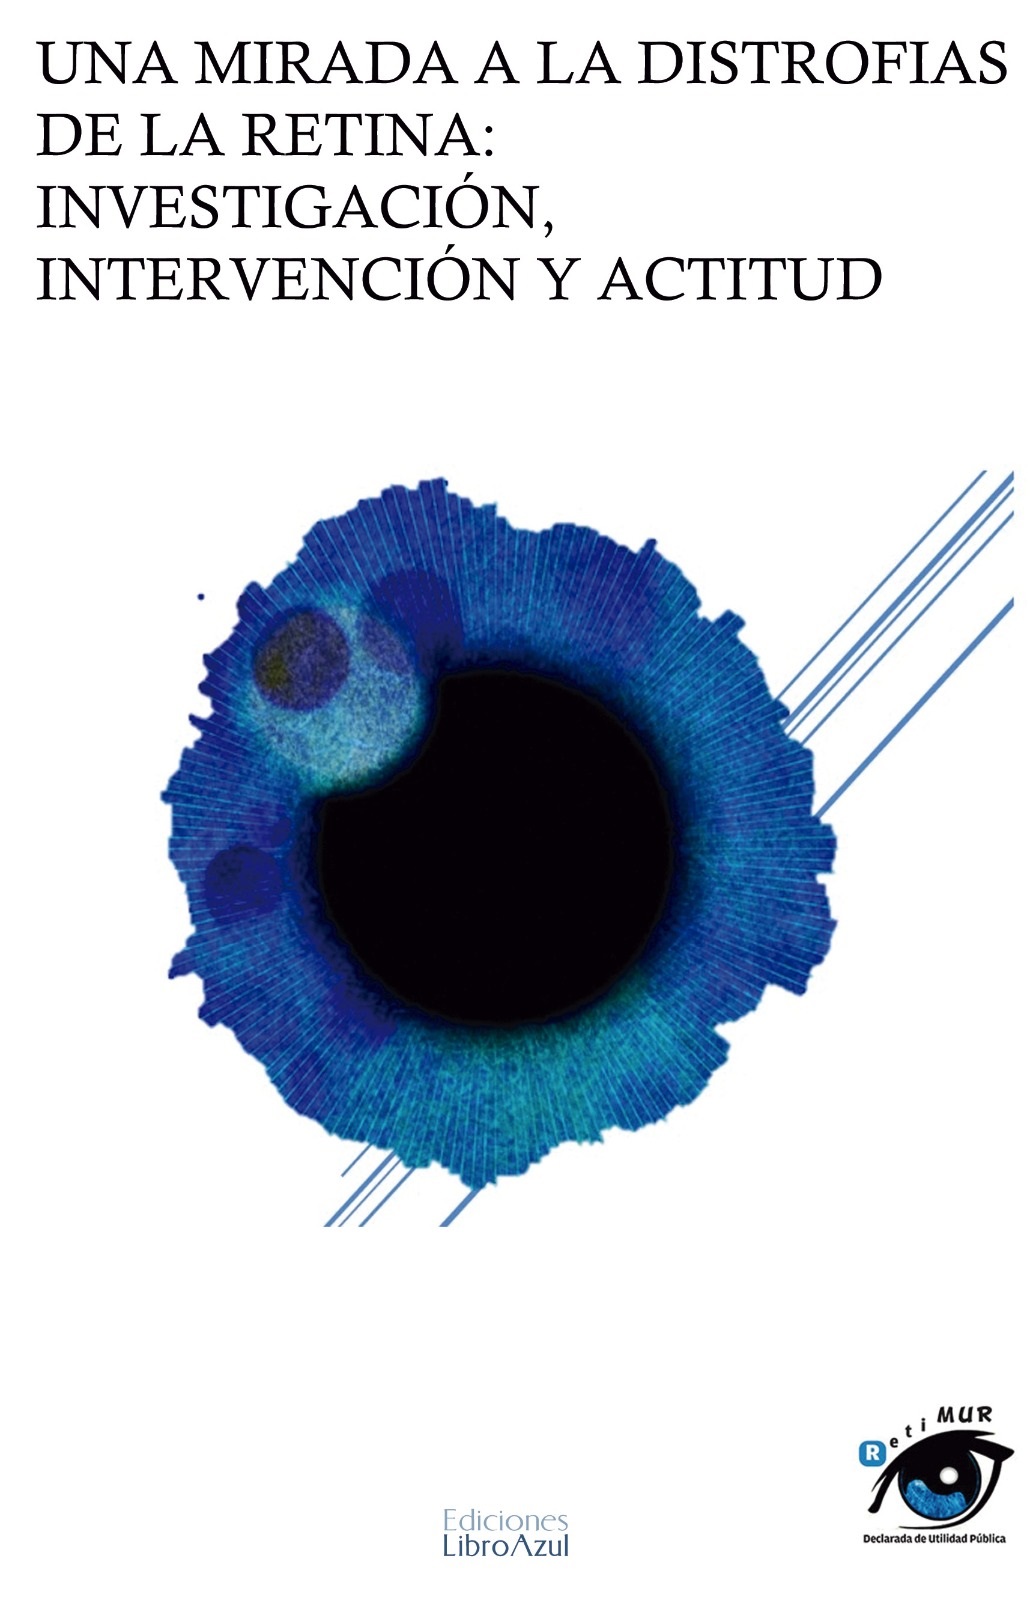 Logo Una Mirada a las distrofias de retina: Investigación, Intervención y Actitud (Congreso 2019) 